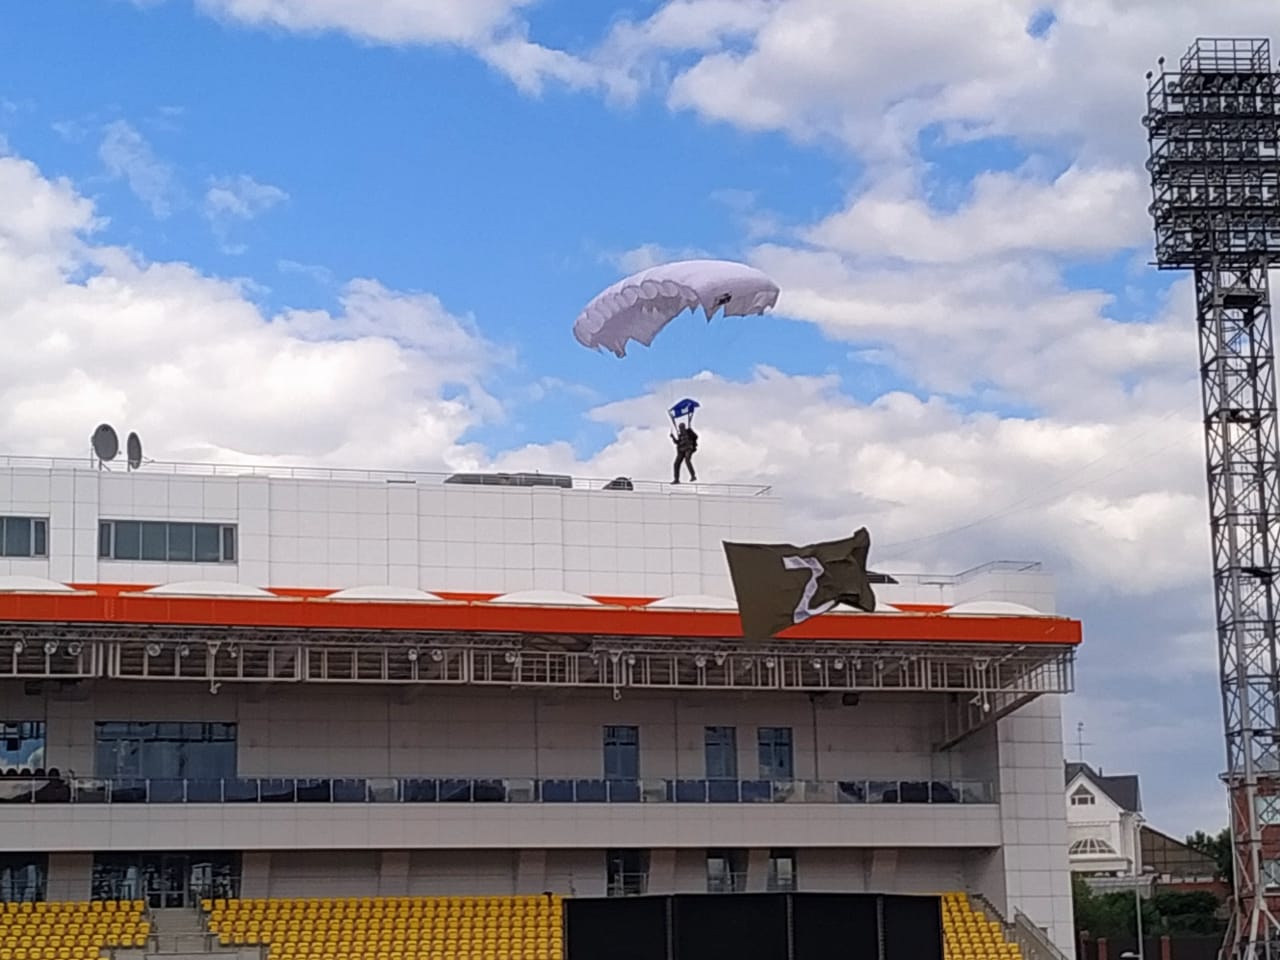 Зрители наблюдали с земли, как лучшие представители тюменского парашютного спорта витали над полем стадиона «Геолог». А вы были на этом празднике?